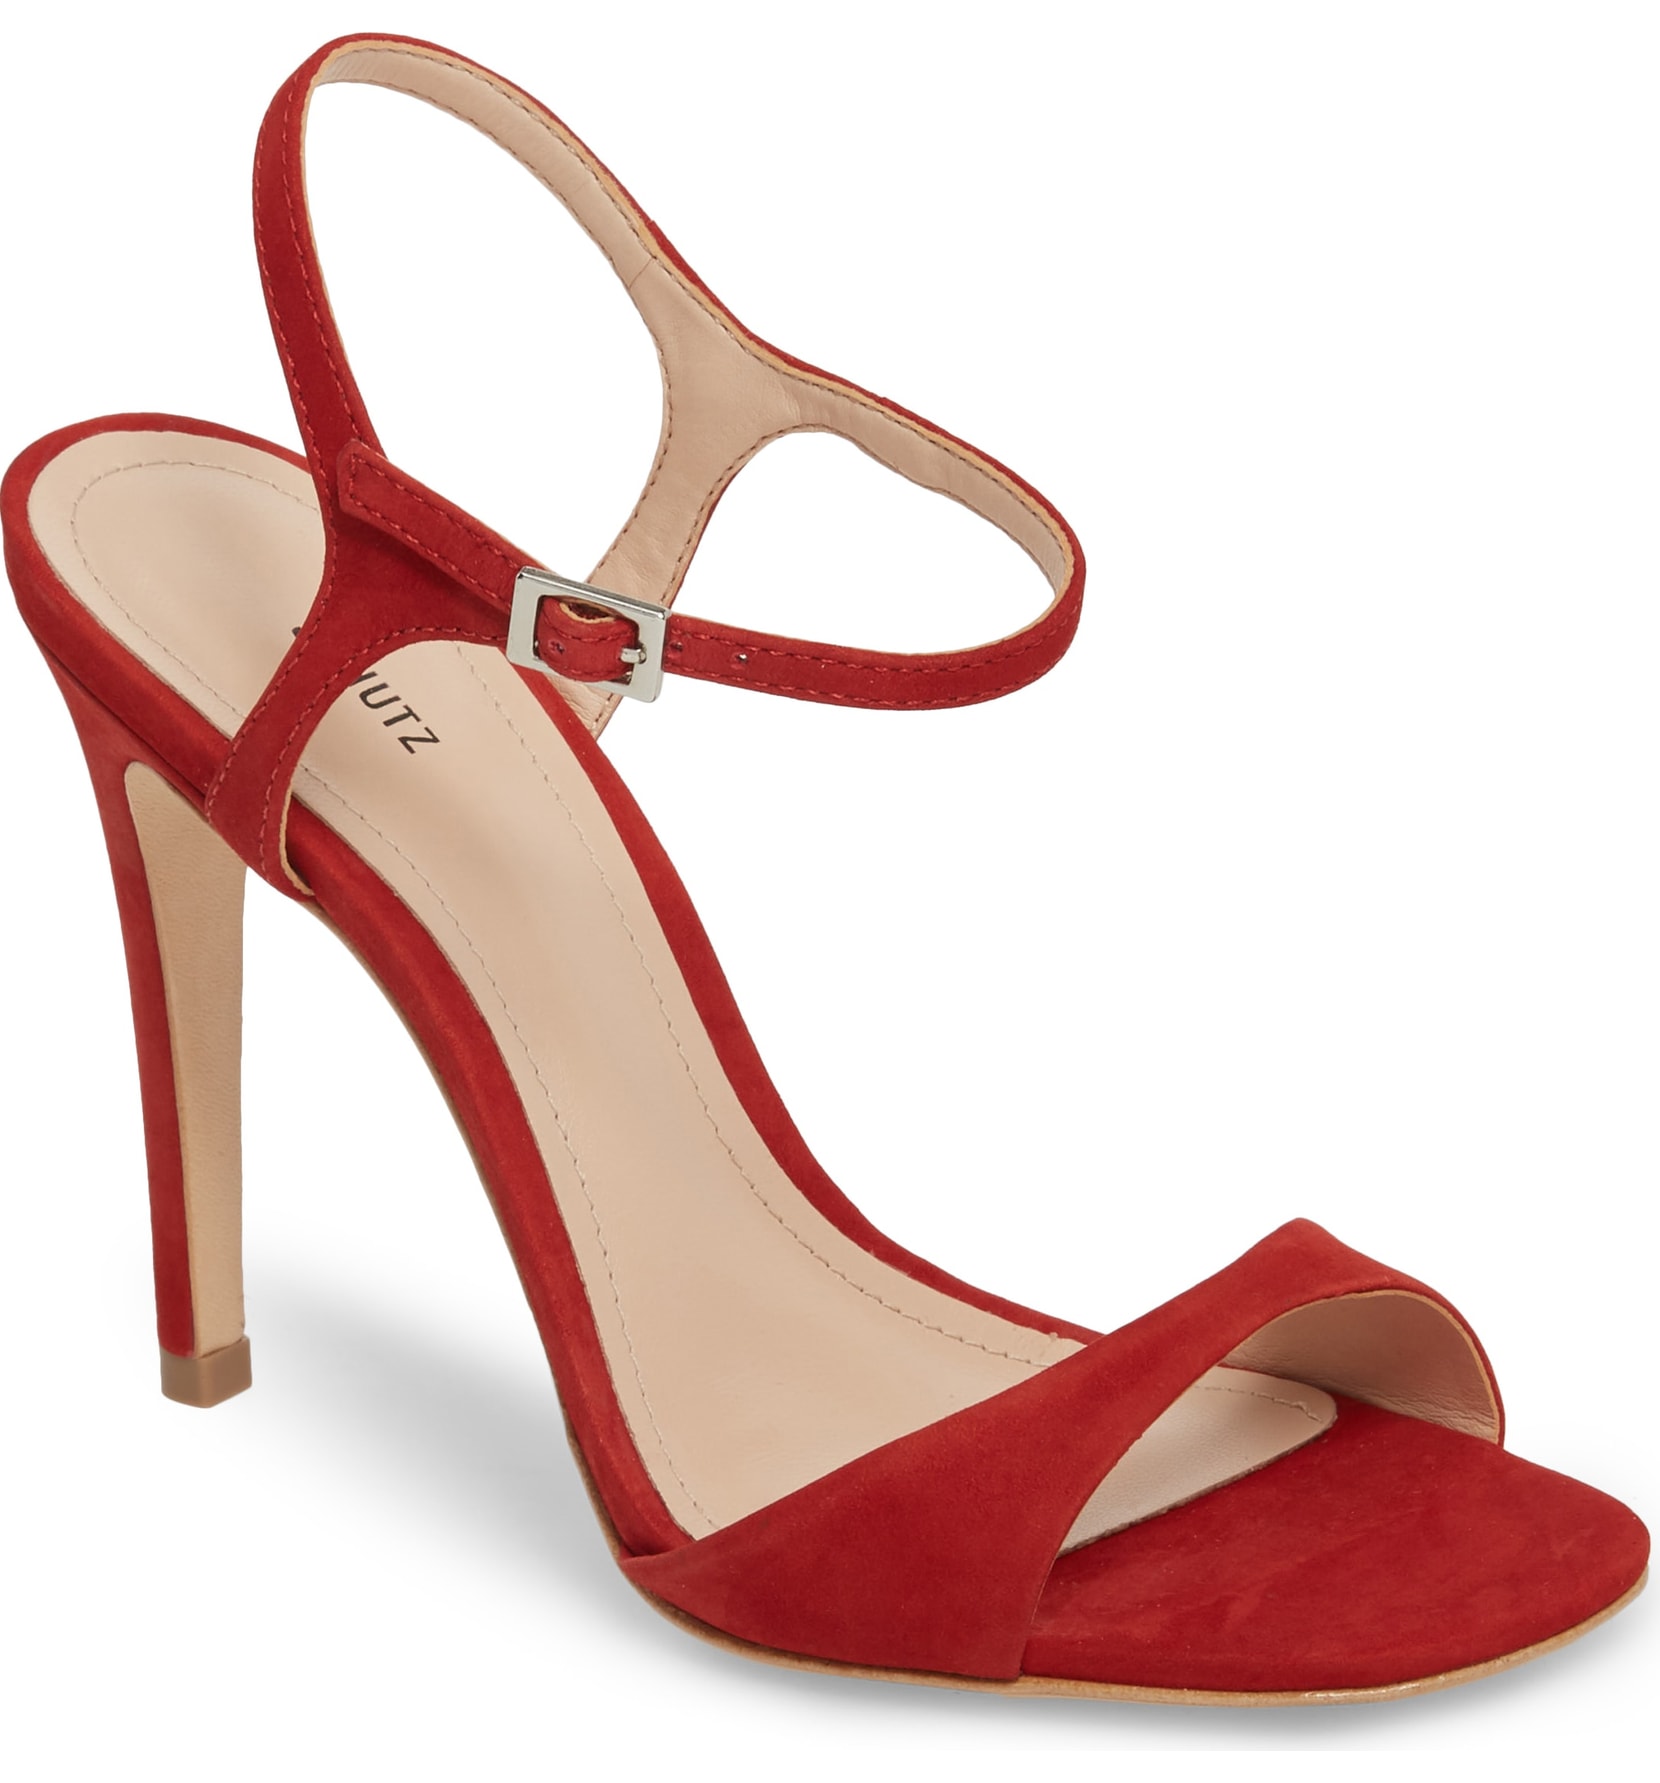 schutz red sandals